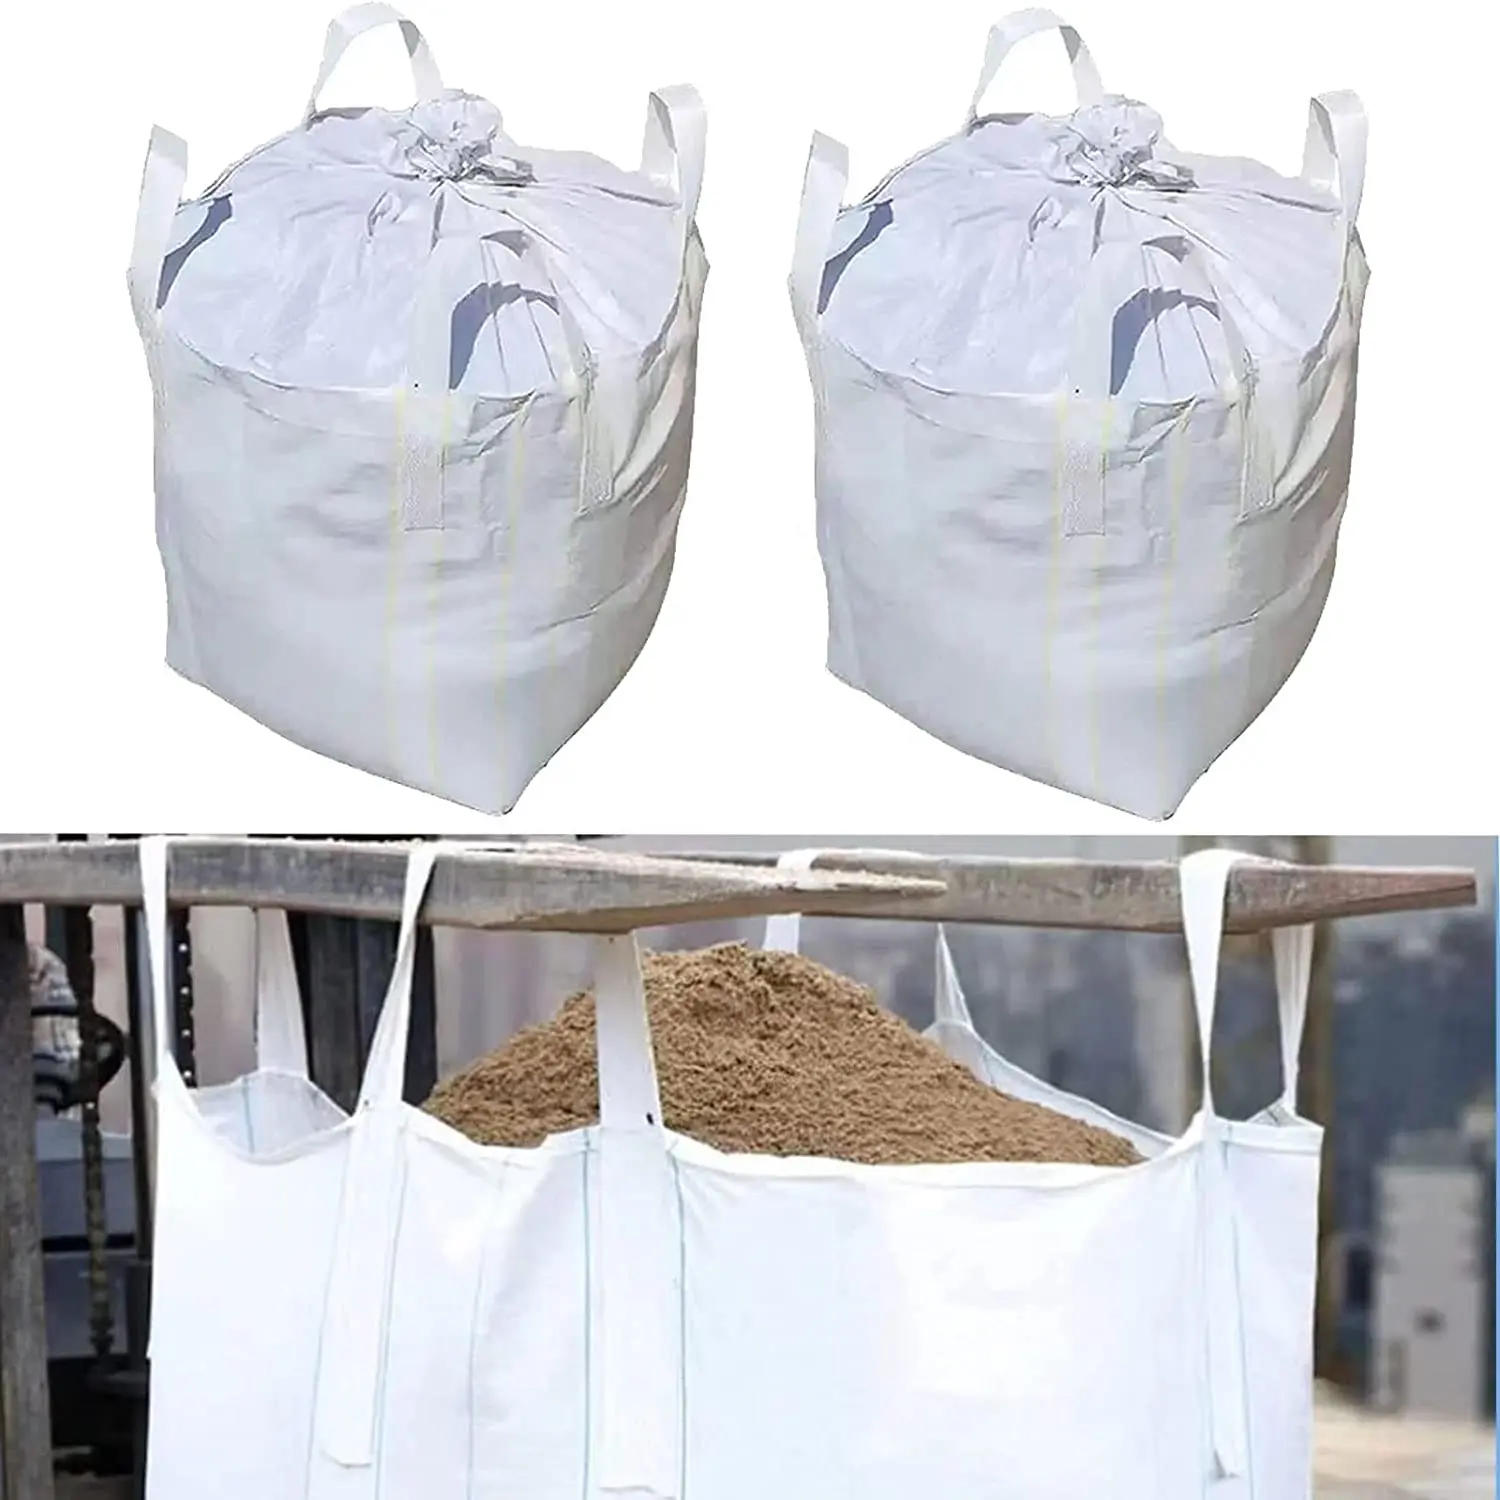 Polipropilen malzeme hurda PP dokuma büyük çantalar-Jumbo çanta-süper torbalar-1 mt jumbo çanta